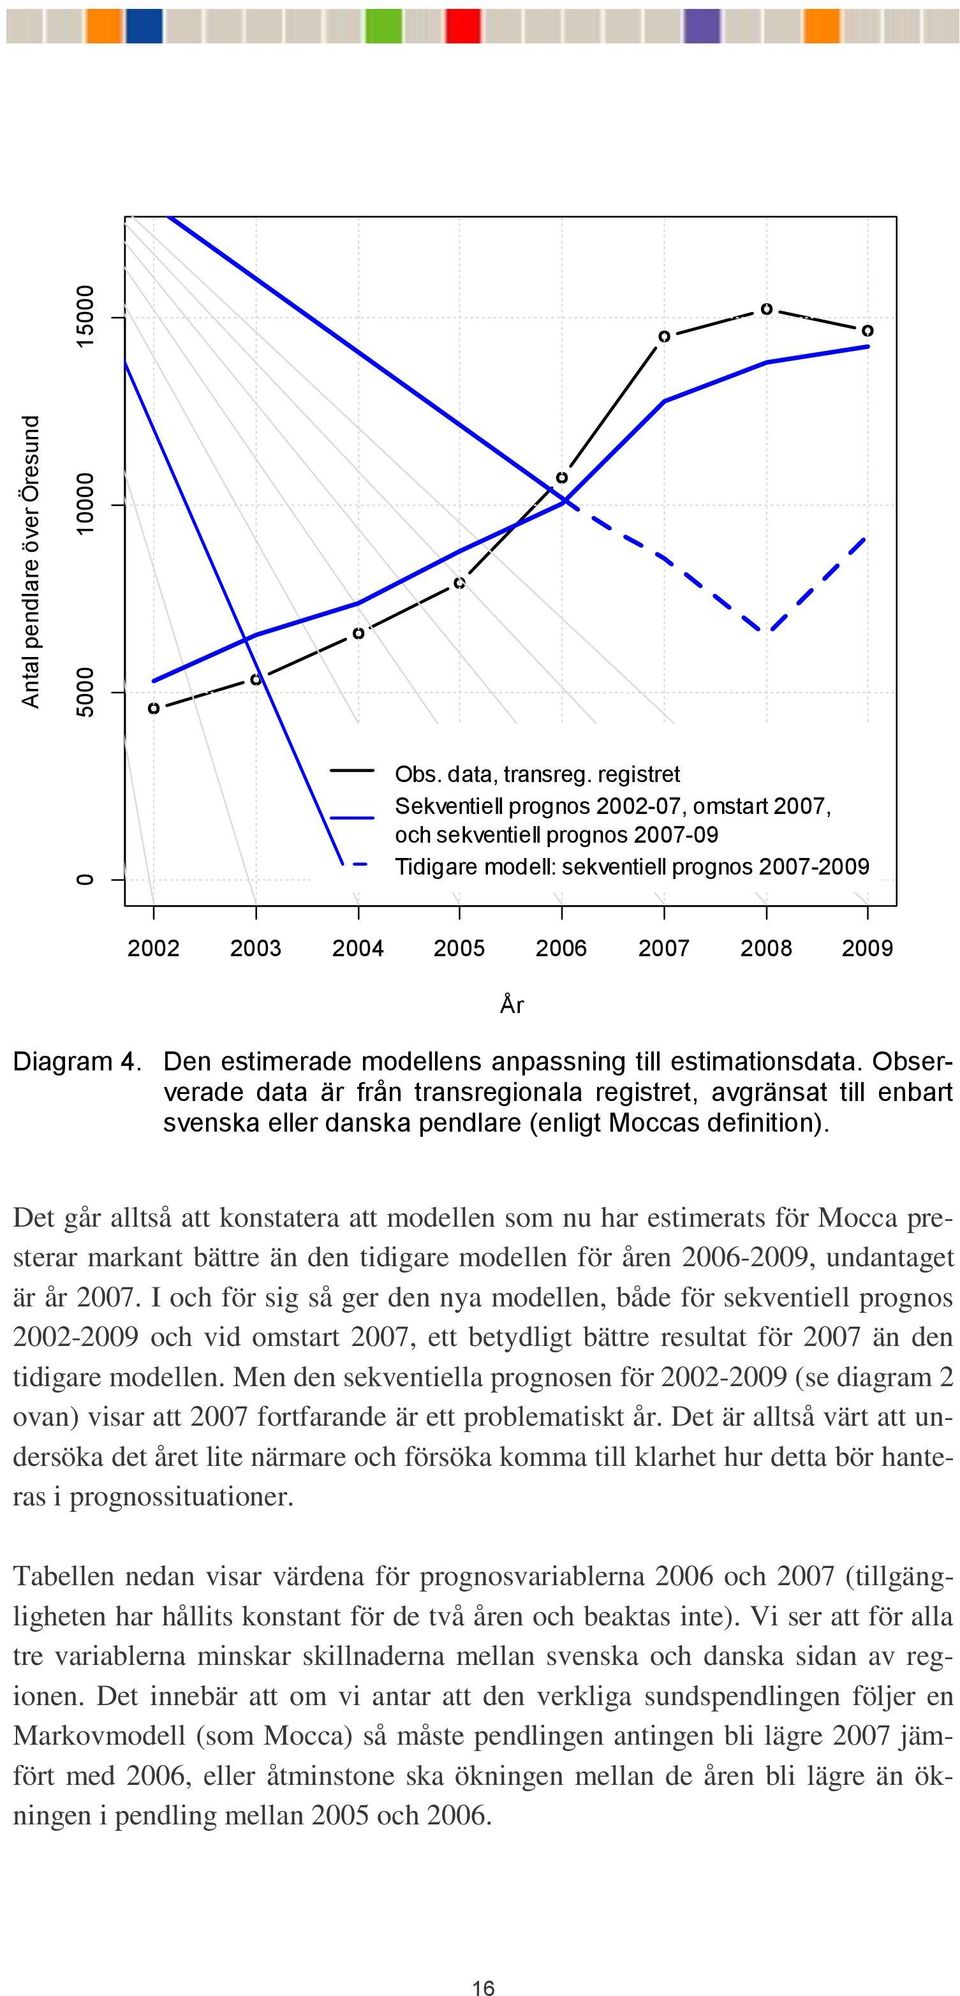 Den estimerade modellens anpassning till estimationsdata. Observerade data är från transregionala registret, avgränsat till enbart svenska eller danska pendlare (enligt Moccas definition).